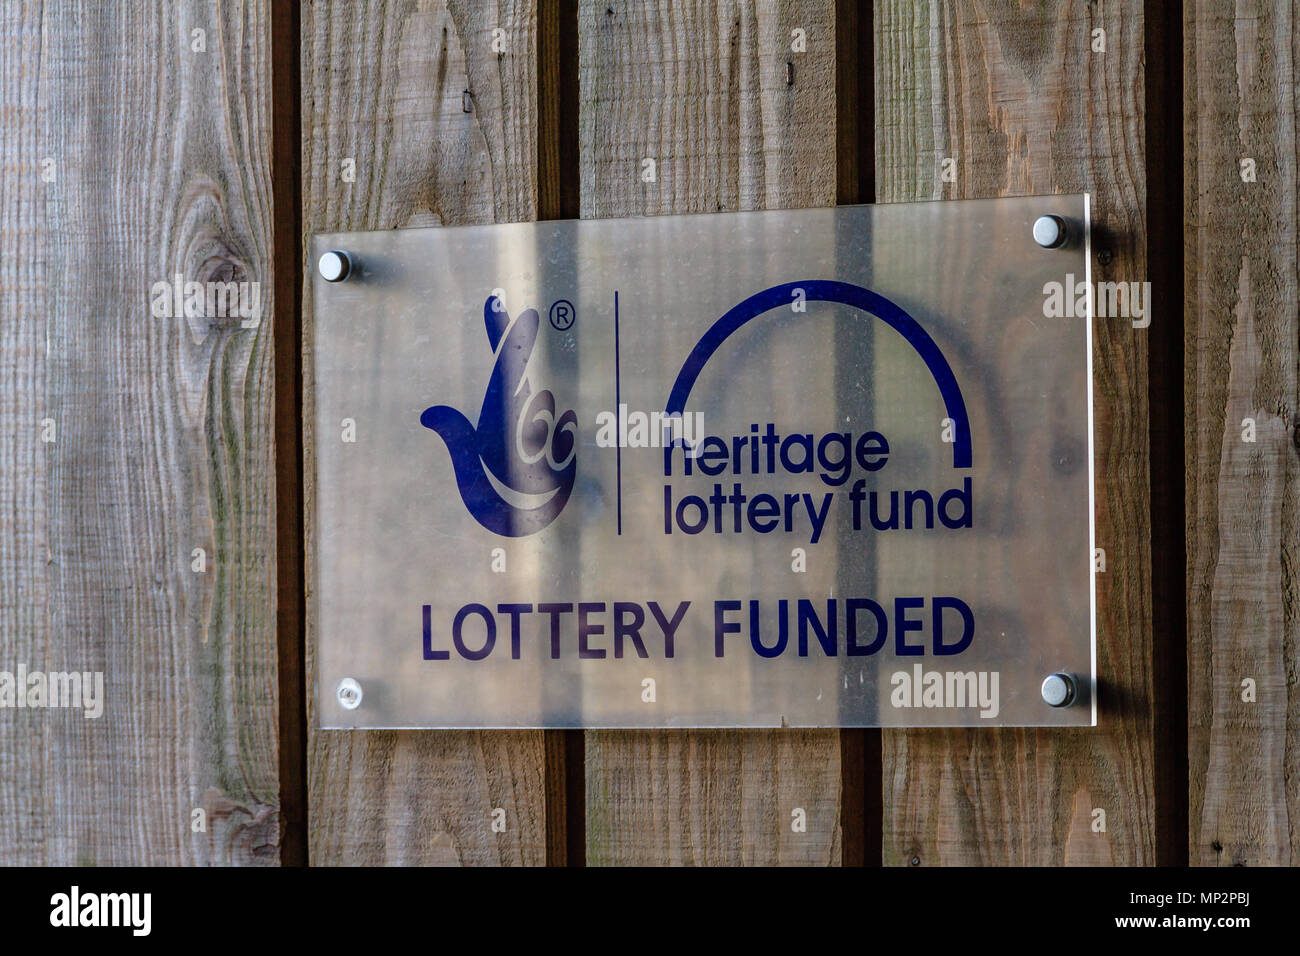 Heritage Lottery Fund financé loterie signe sur une clôture en bois Banque D'Images